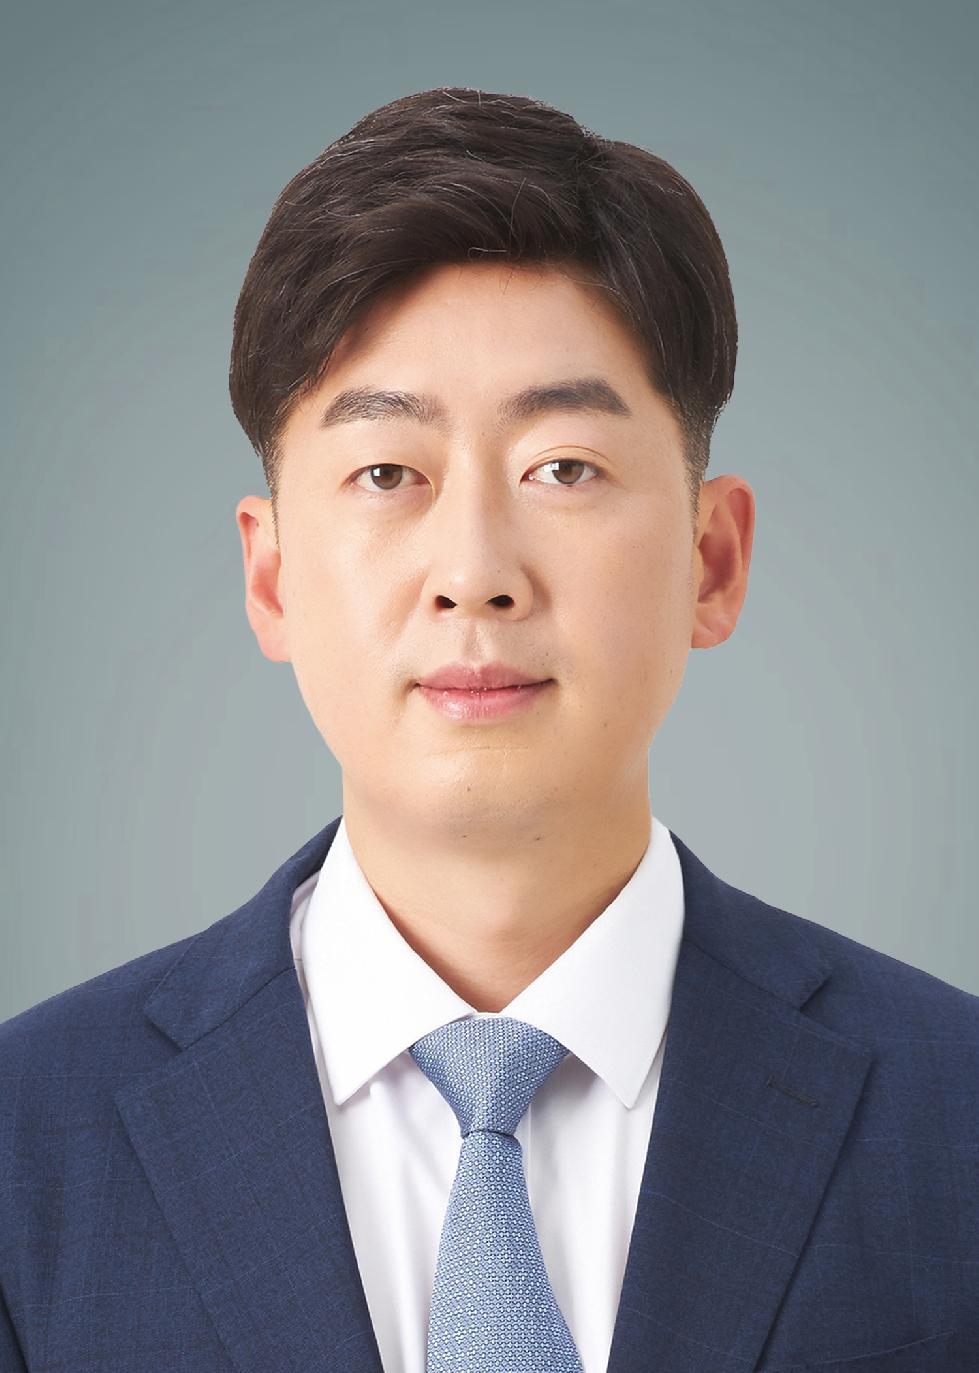 경기도의회 박진영 의원, 직장운동경기부 내 인권보호 강화 및 체계적 운영